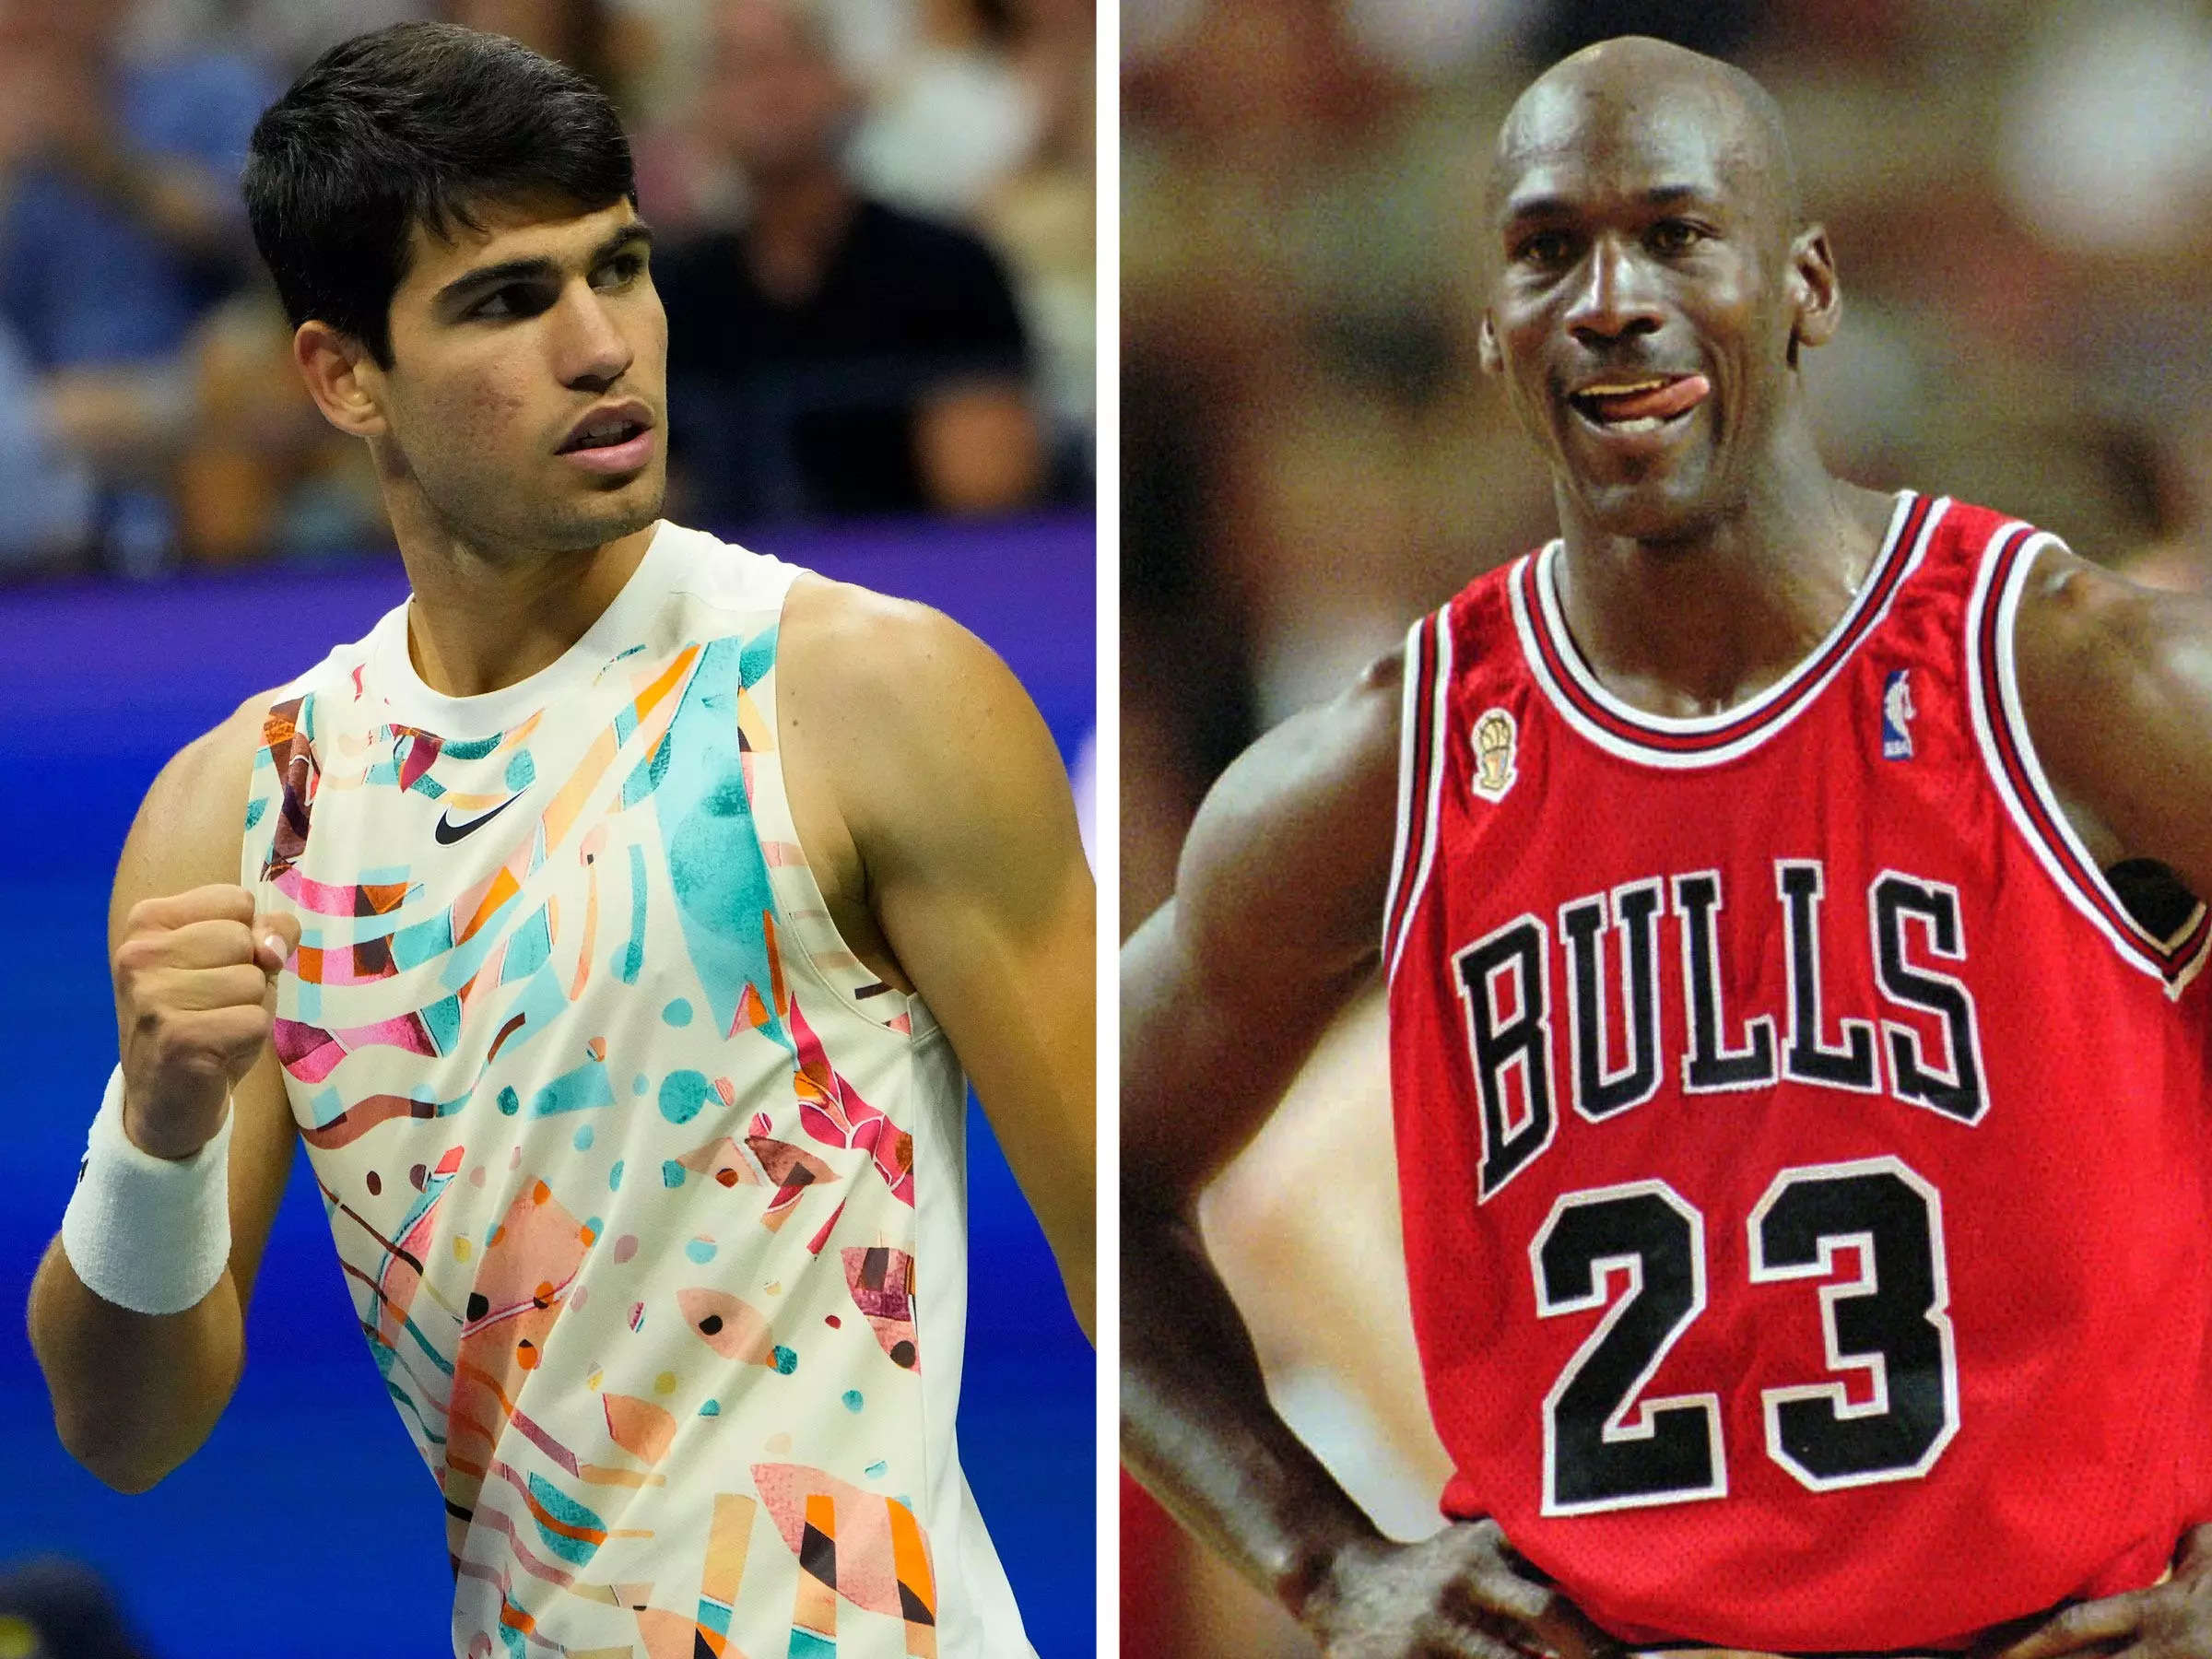 Tennis' most electric star is a 'huge fan' of Michael Jordan, but